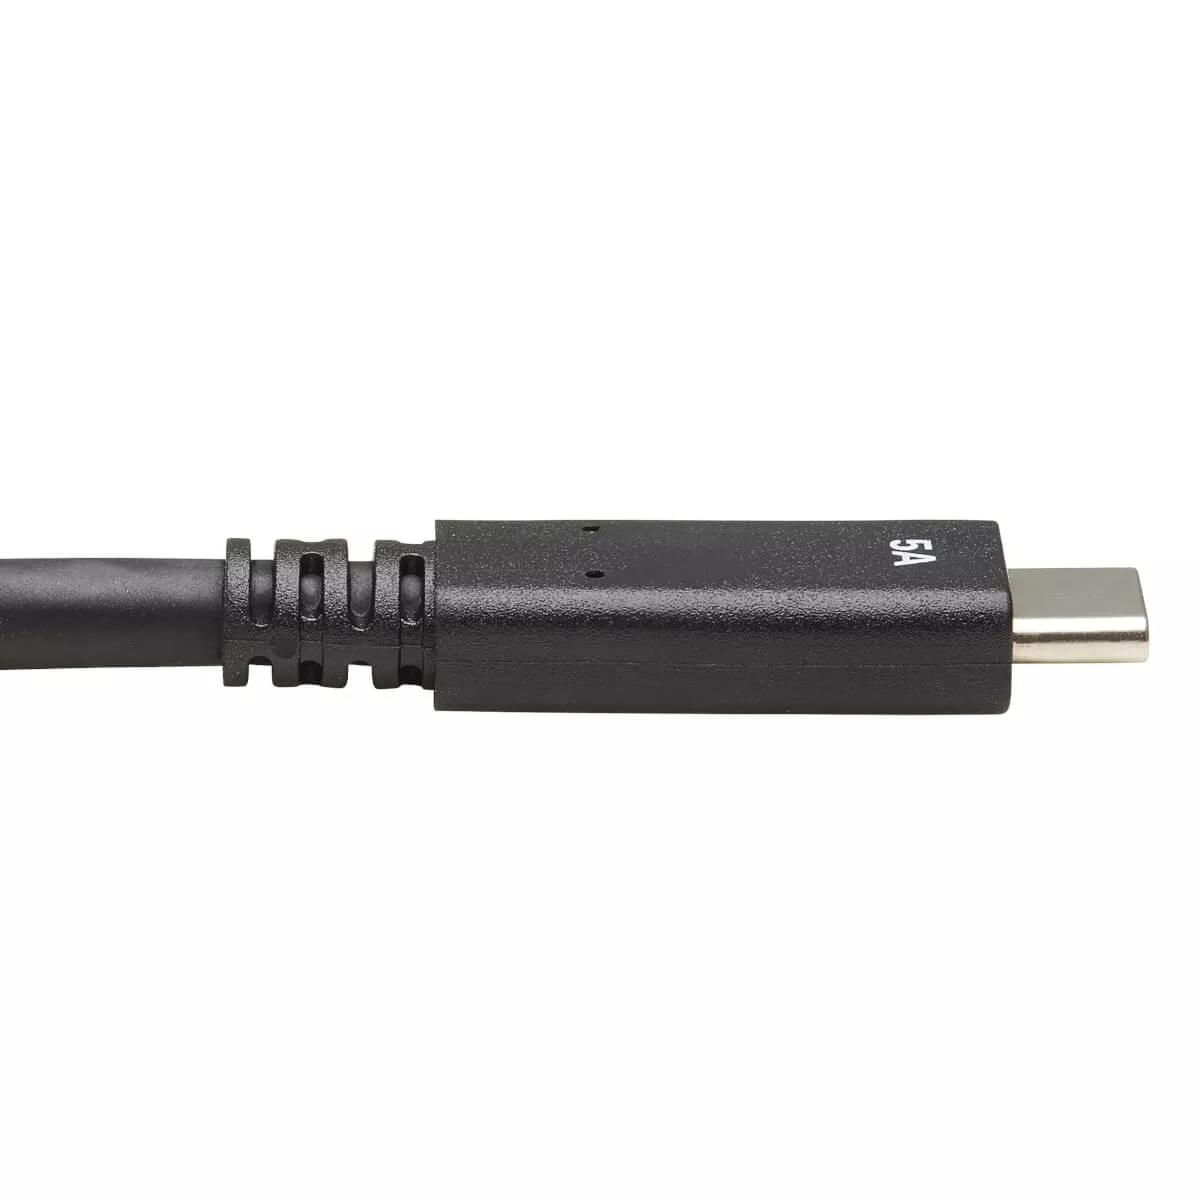 Vente EATON TRIPPLITE USB-C Cable M/M - USB 3.1 Tripp Lite au meilleur prix - visuel 2